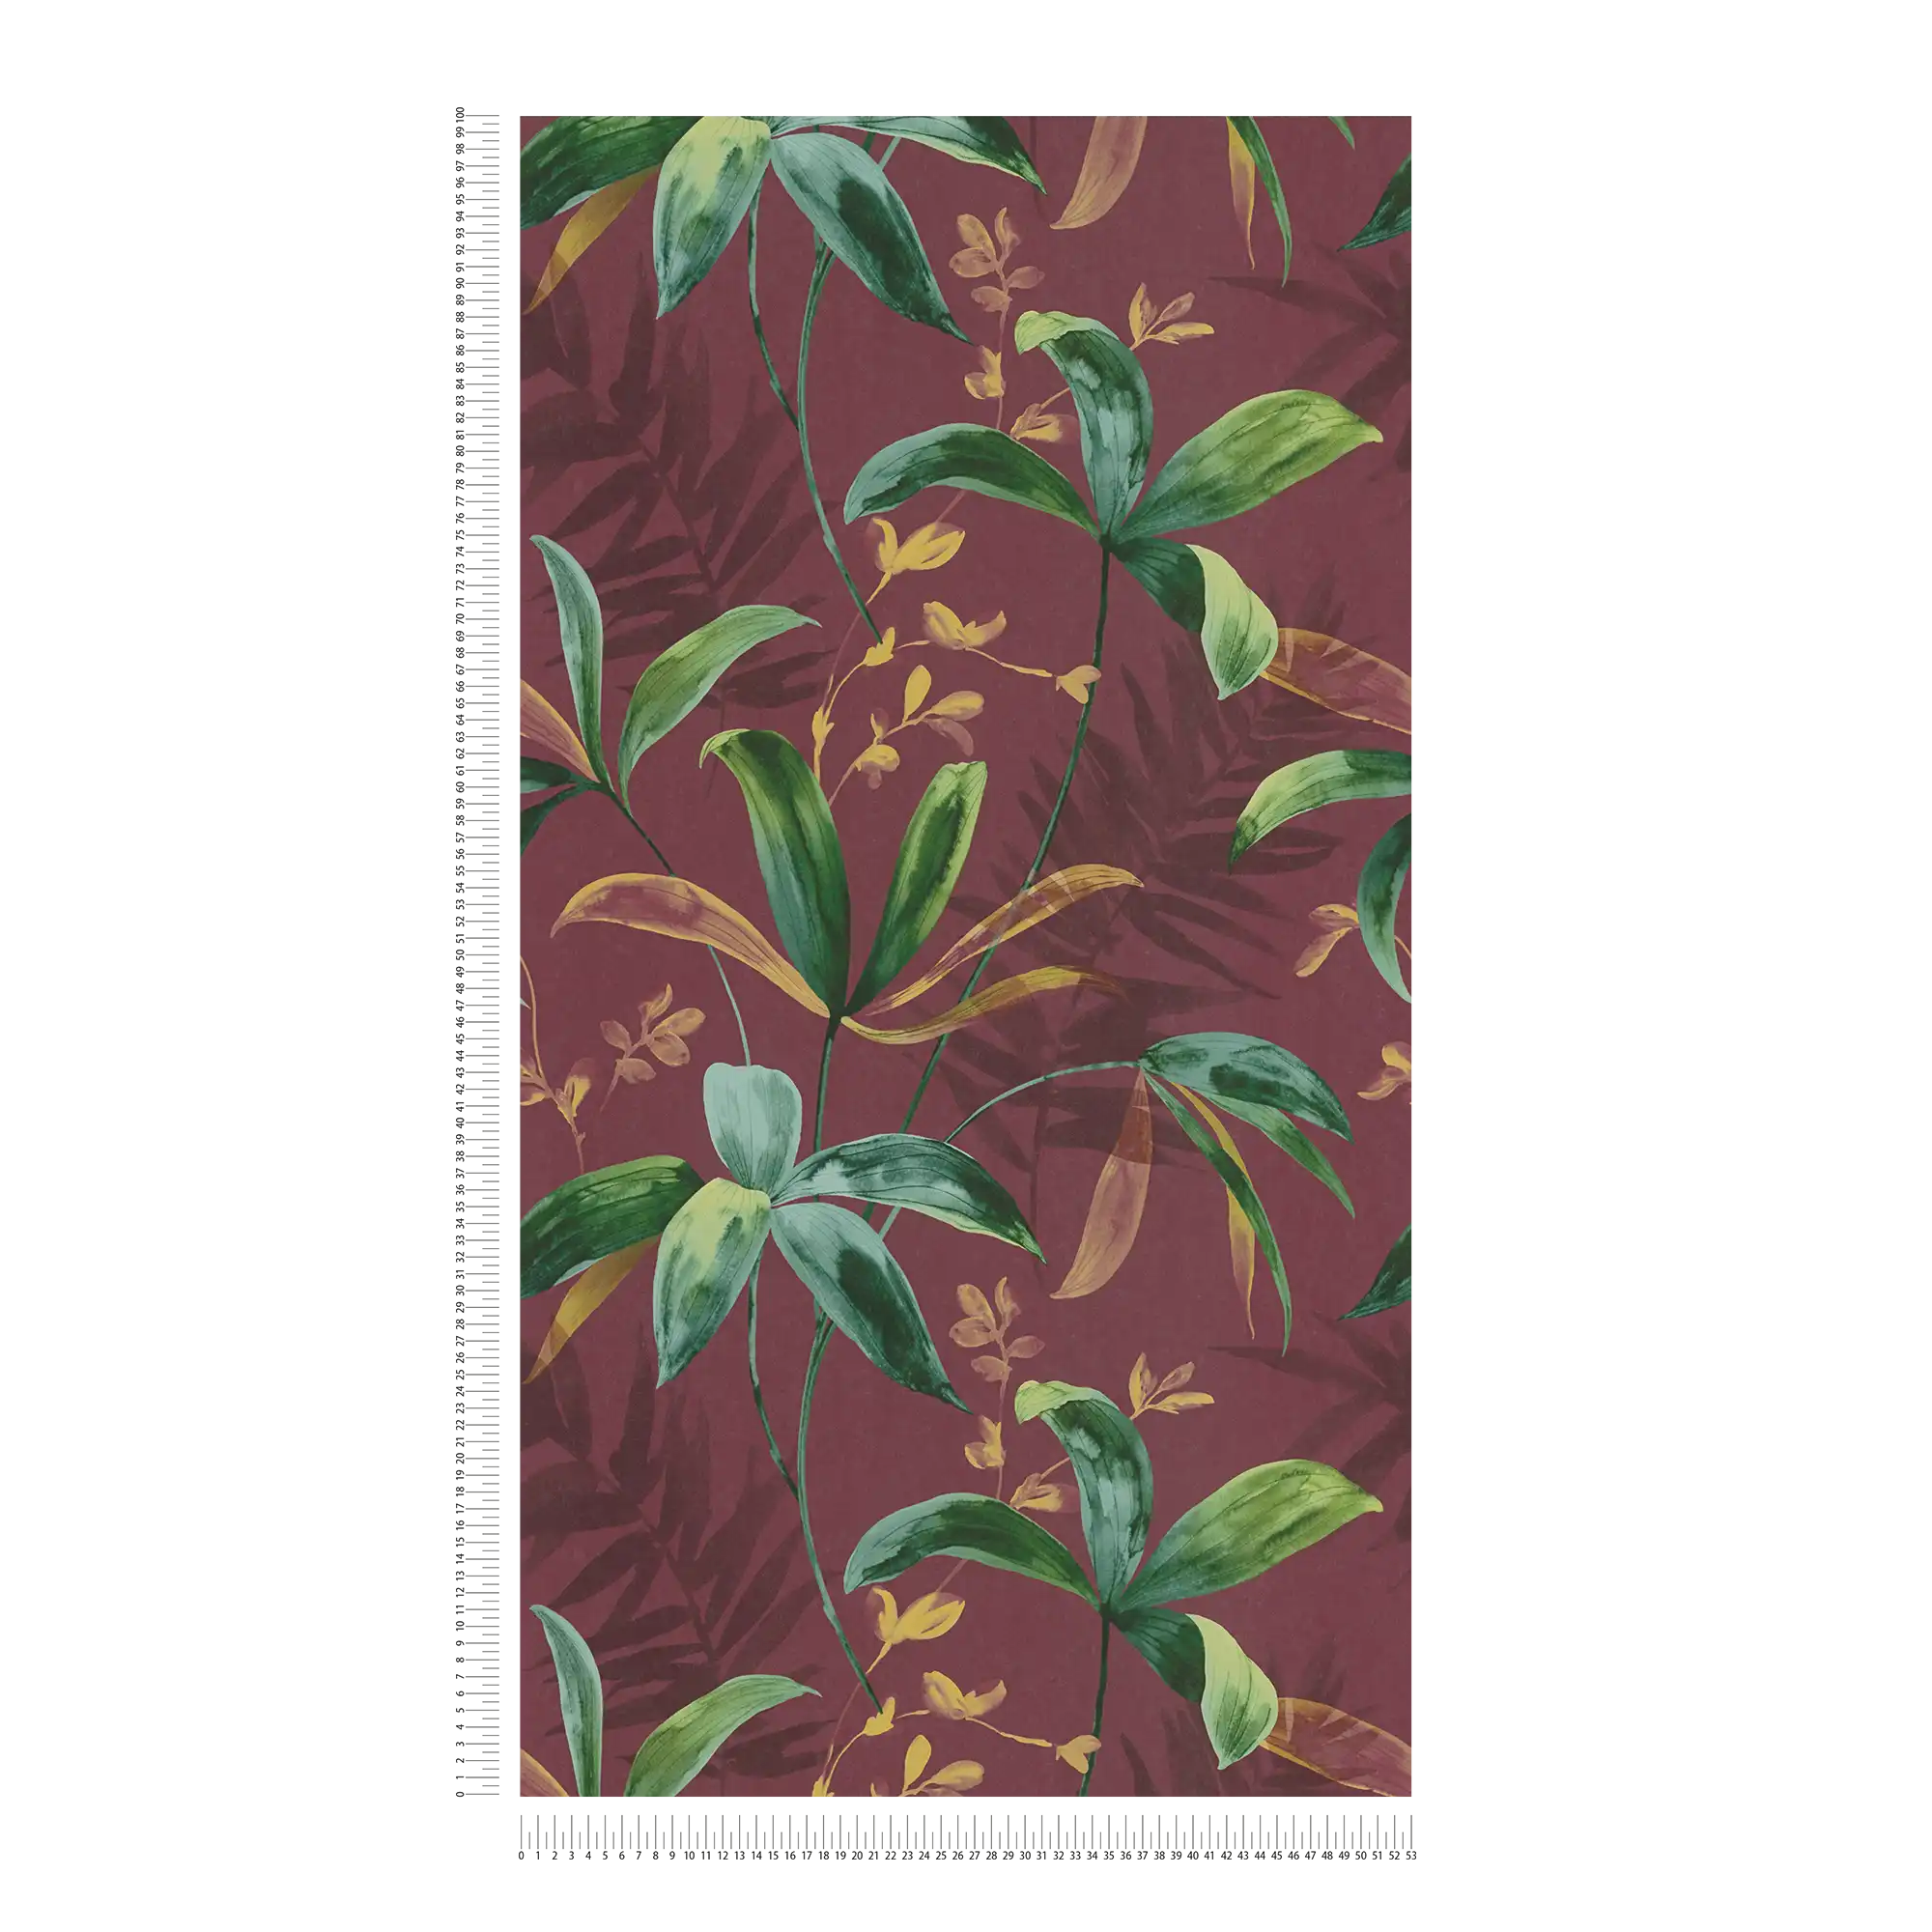             Dunkelrote Tapete mit Grünen Blättern im Aquarell Stil – Rot, Grün, Gelb
        